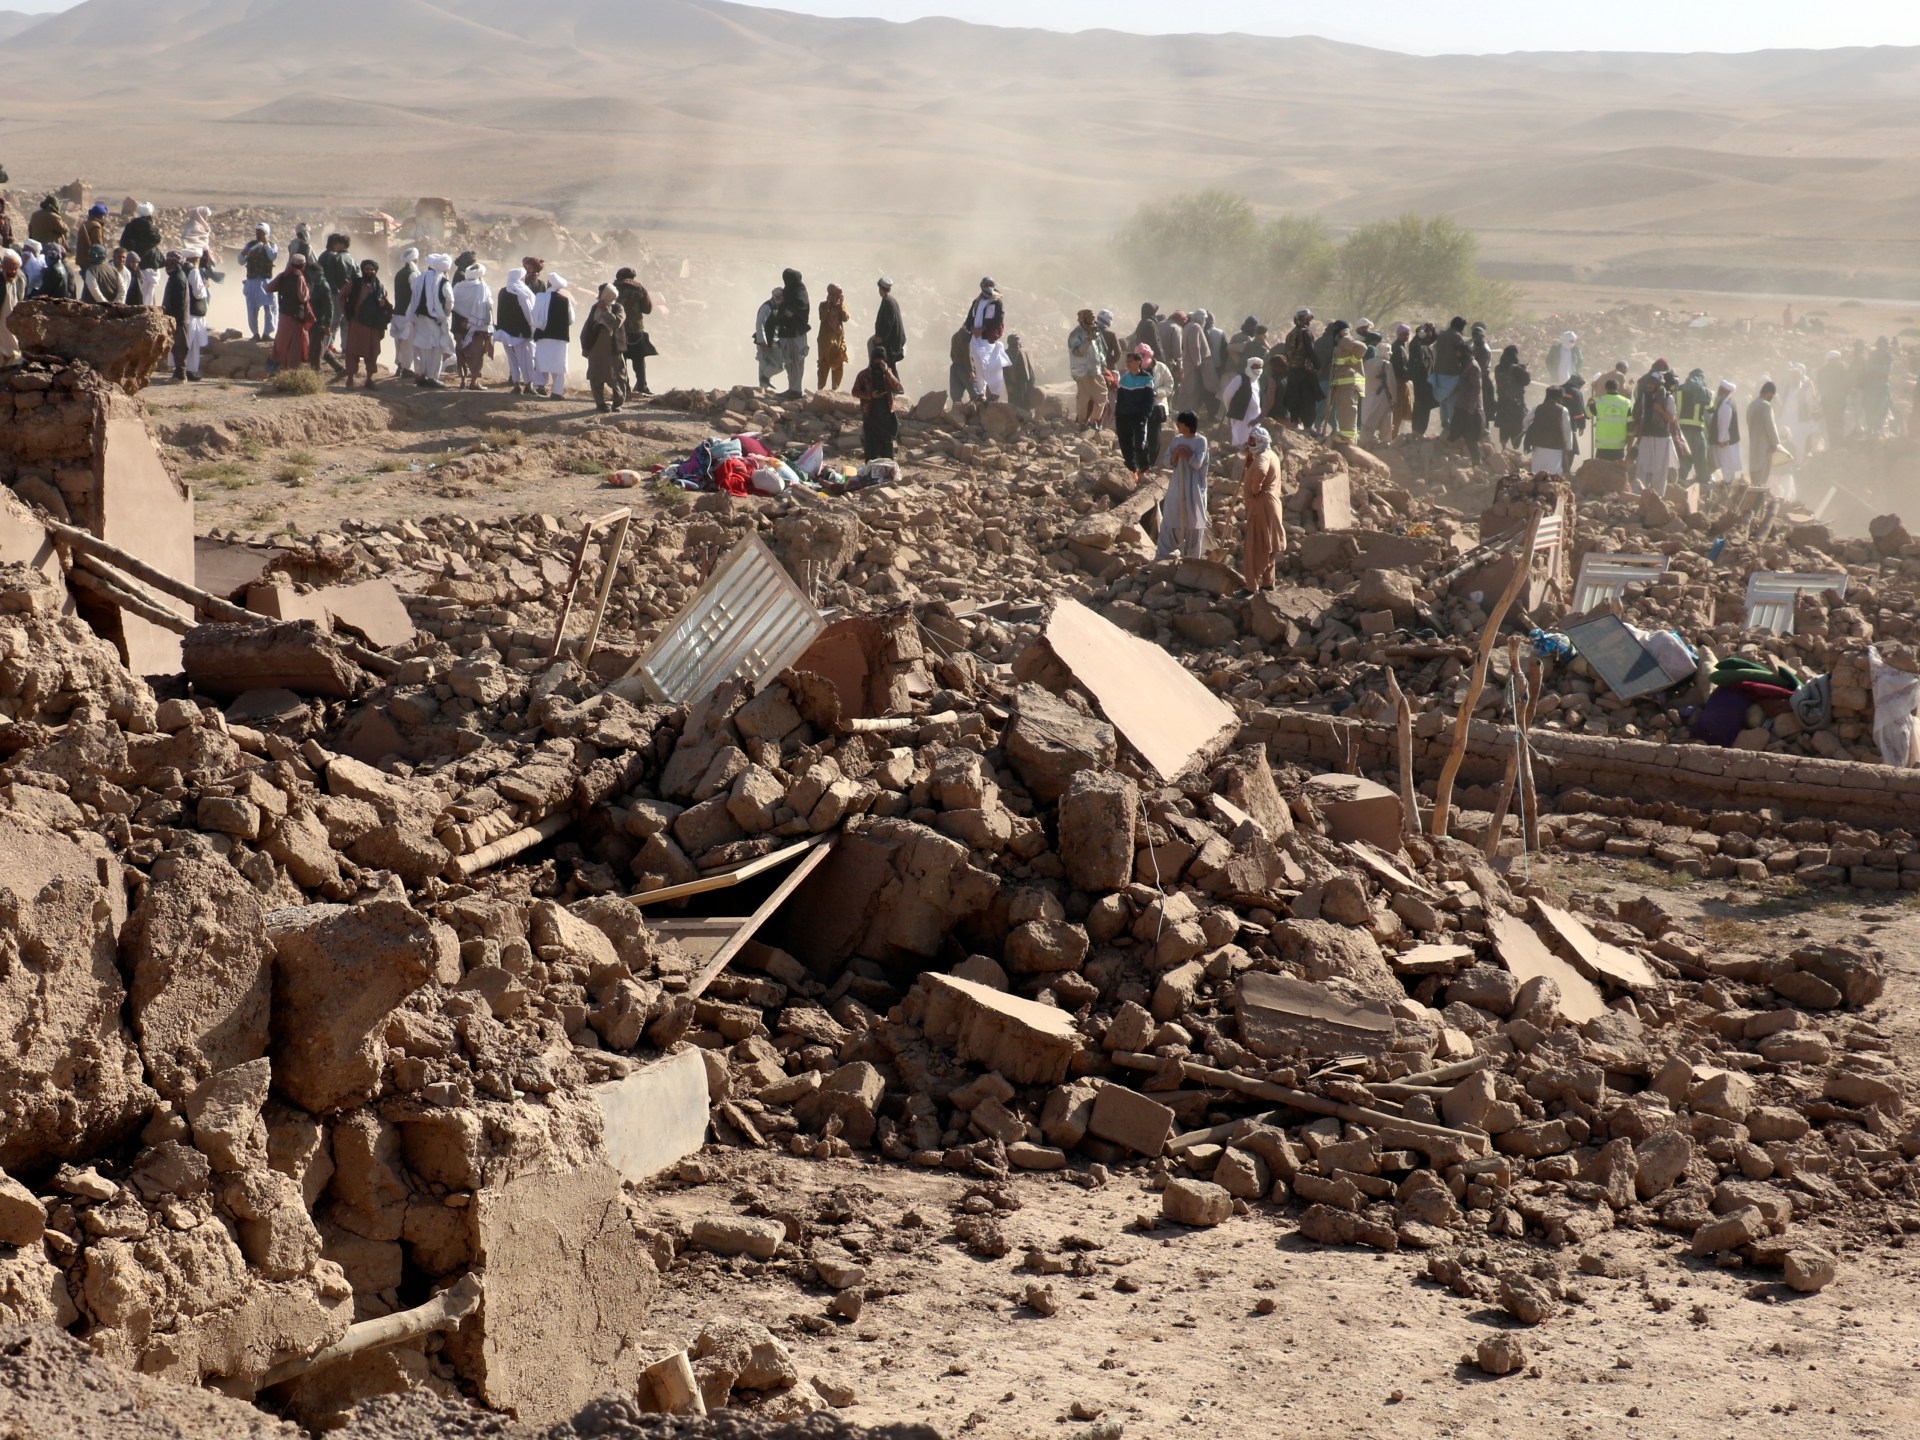 아프가니스탄, 며칠 만에 두 번째 강한 지진에 노출  지진 뉴스